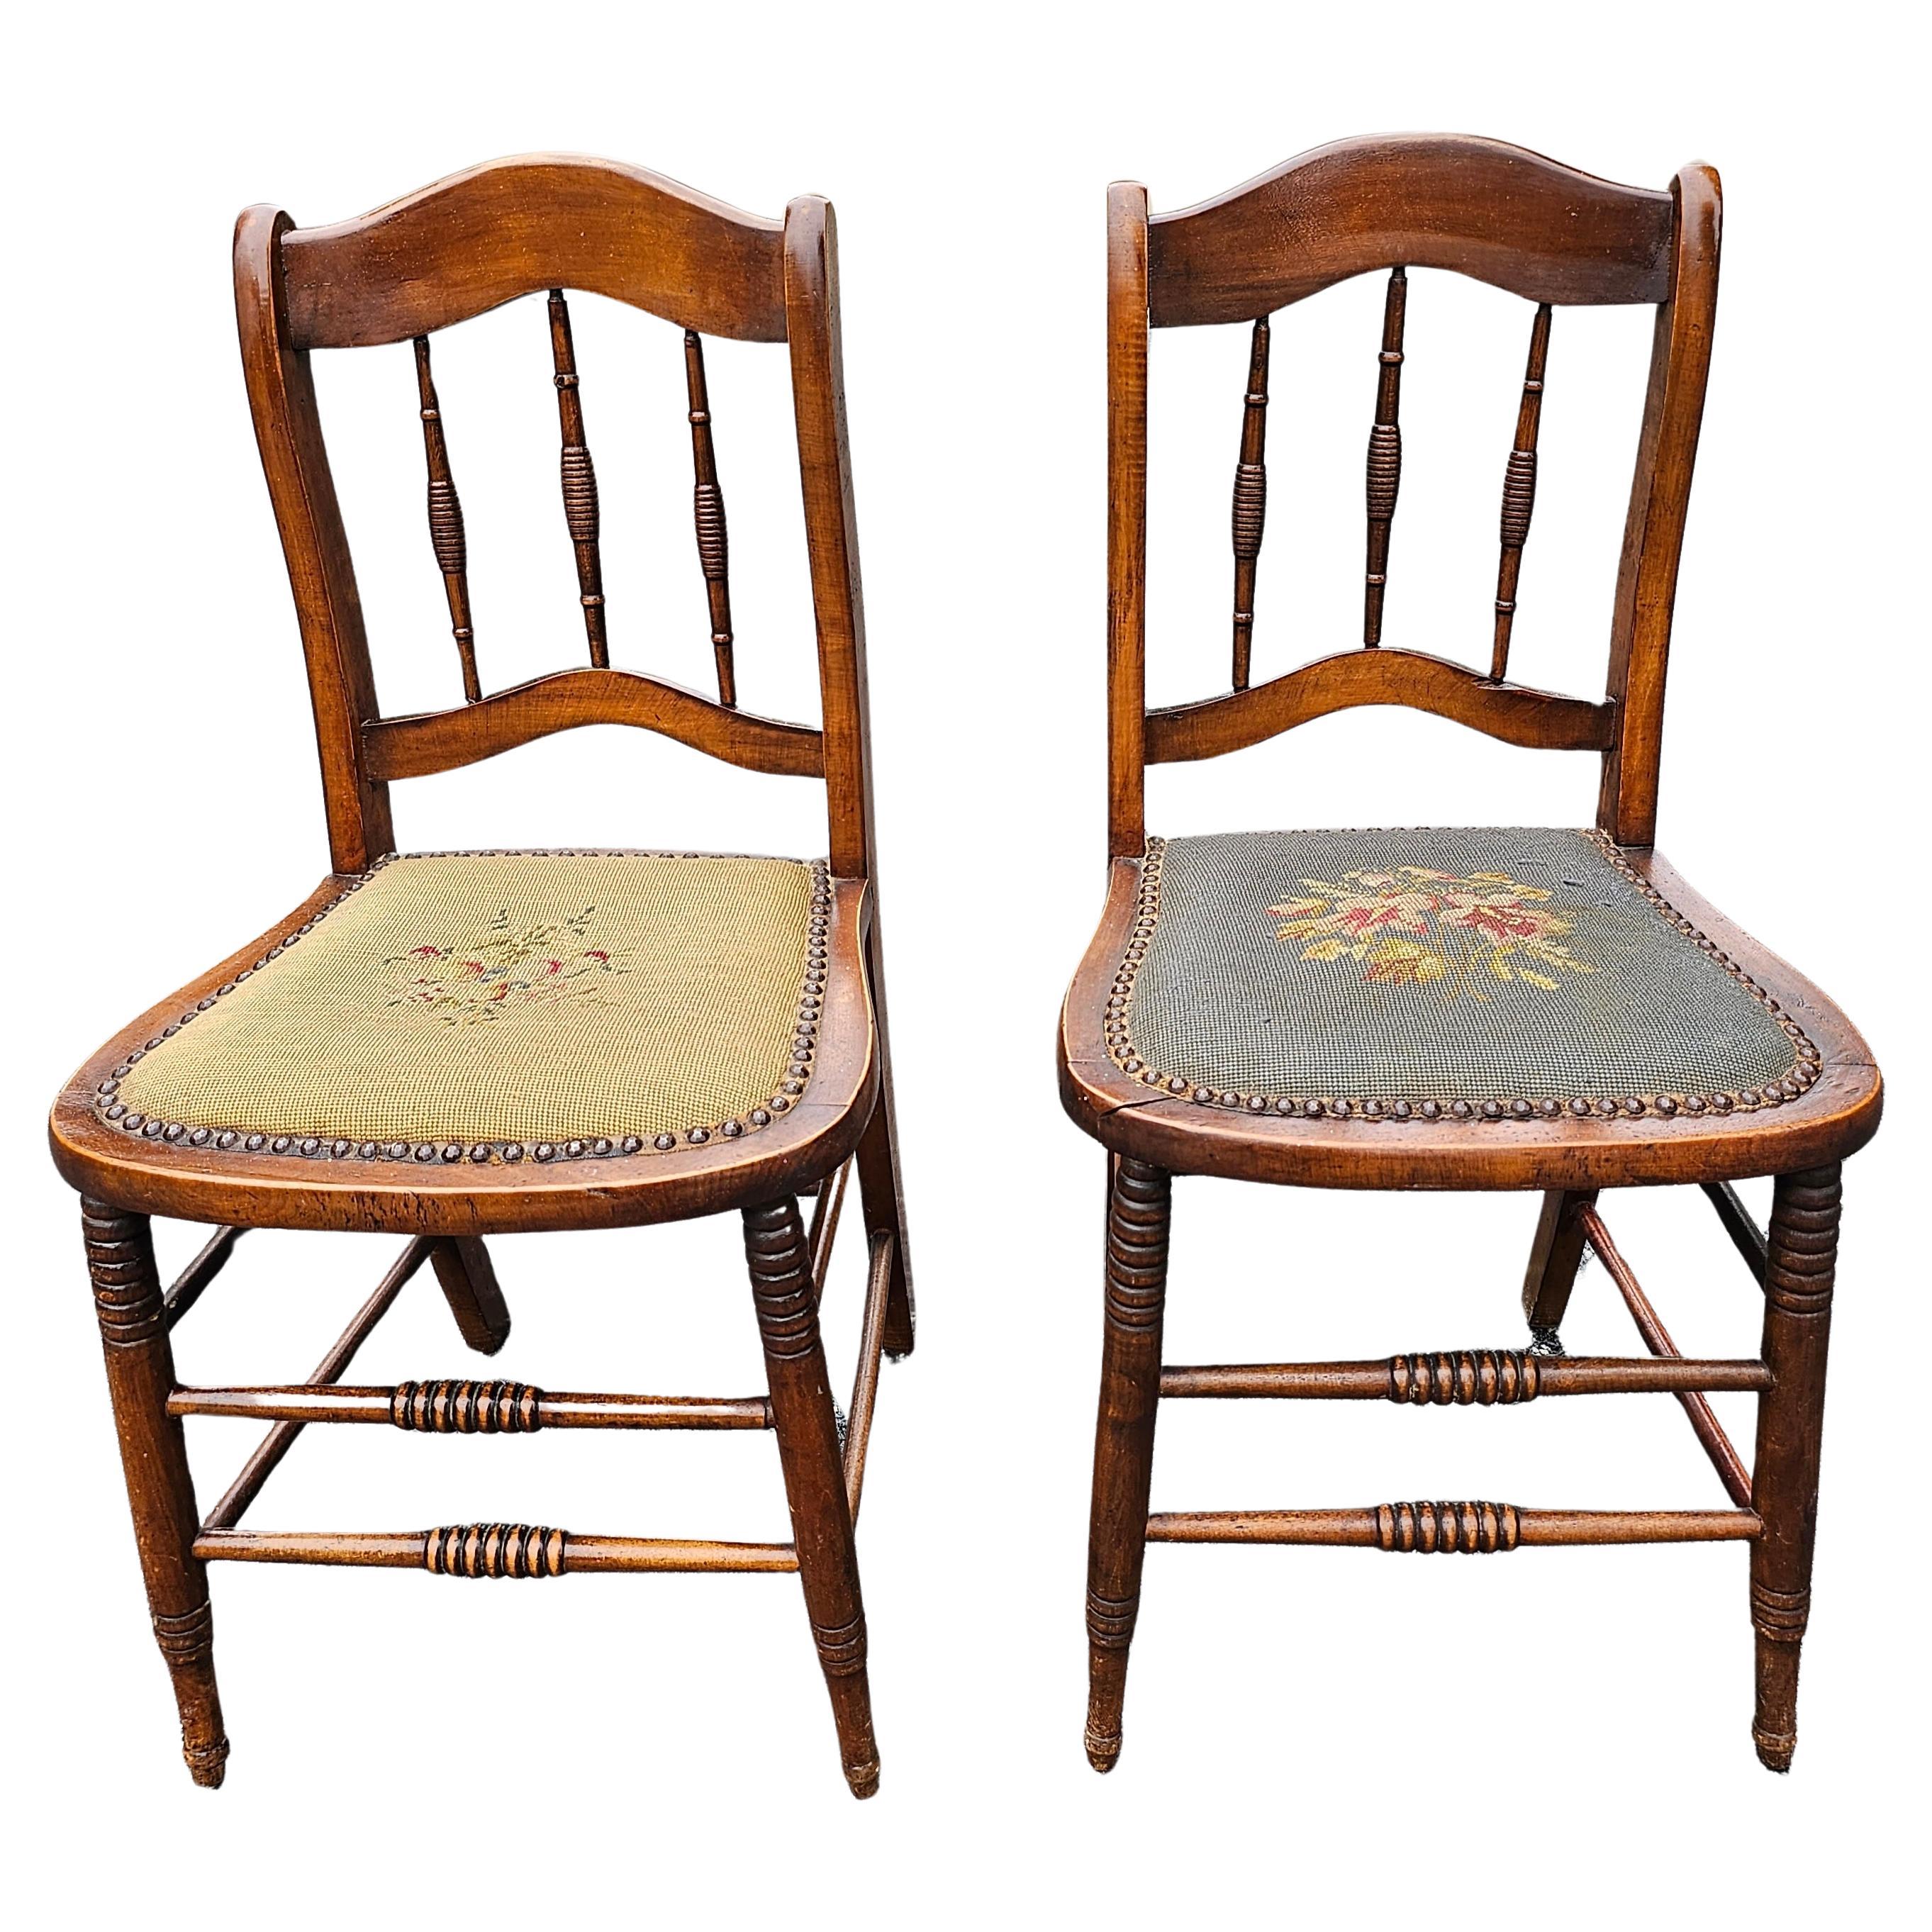 Paire d'objets victoriens du 19e siècle  Chaises d'appoint en noyer américain et siège tapissé de points d'aiguille. Mesure 17